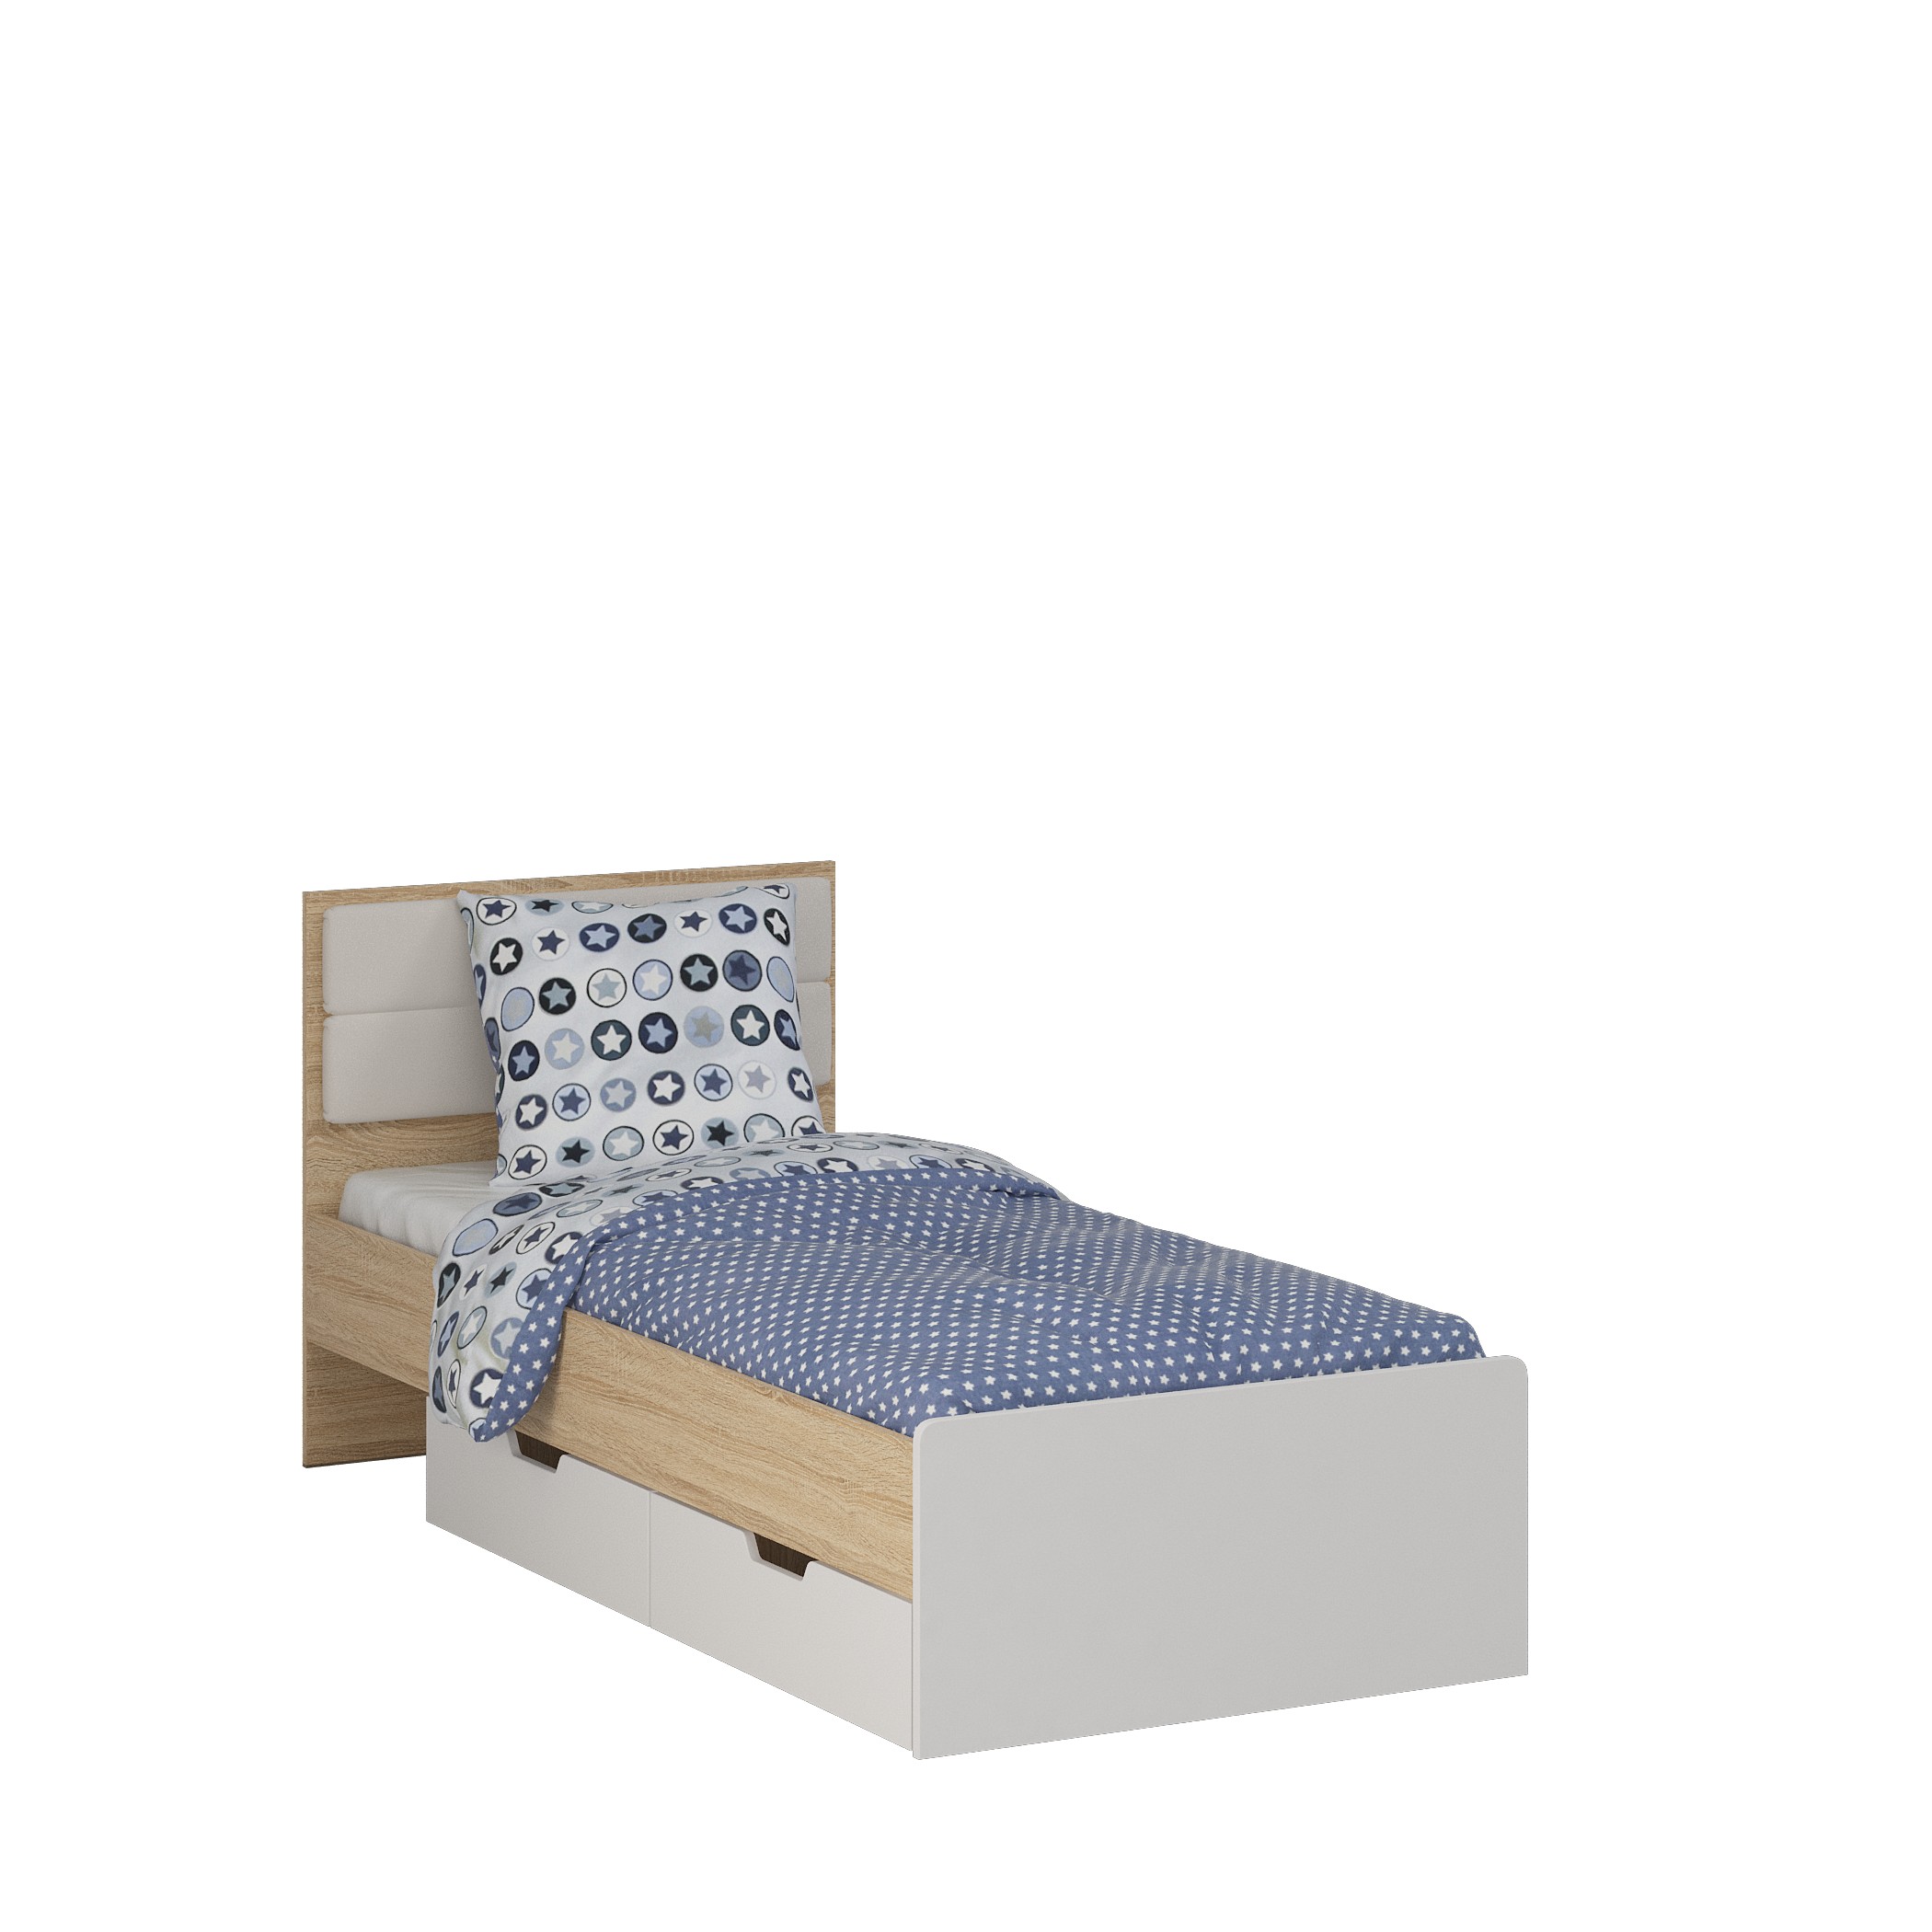 Модульная кровать Норд